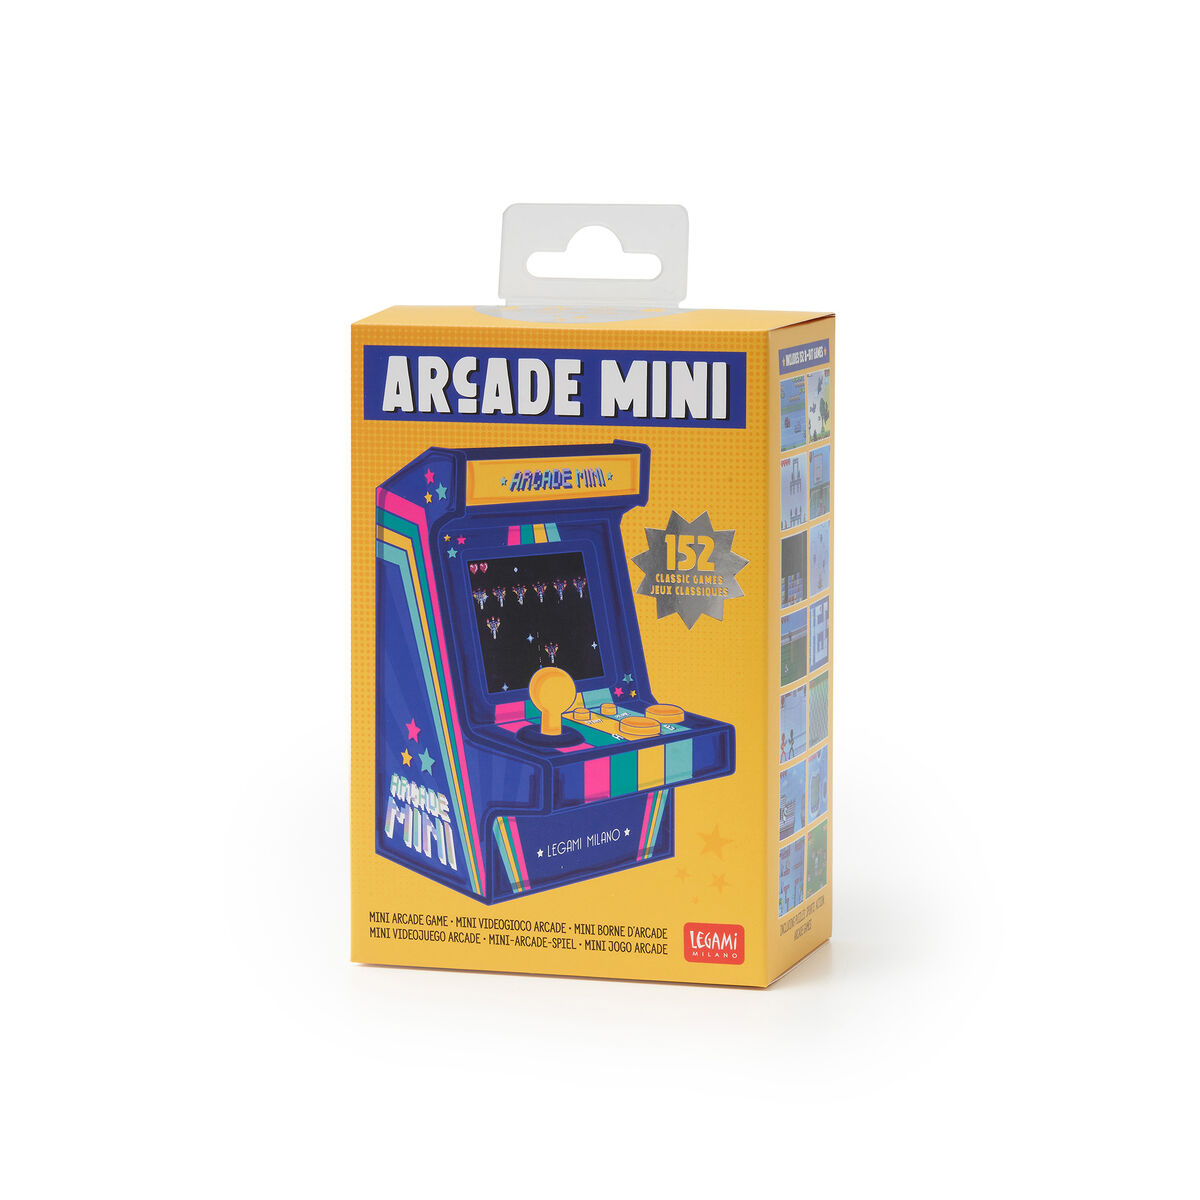 Arcade Mini - Mini Videogioco Arcade, , zoo